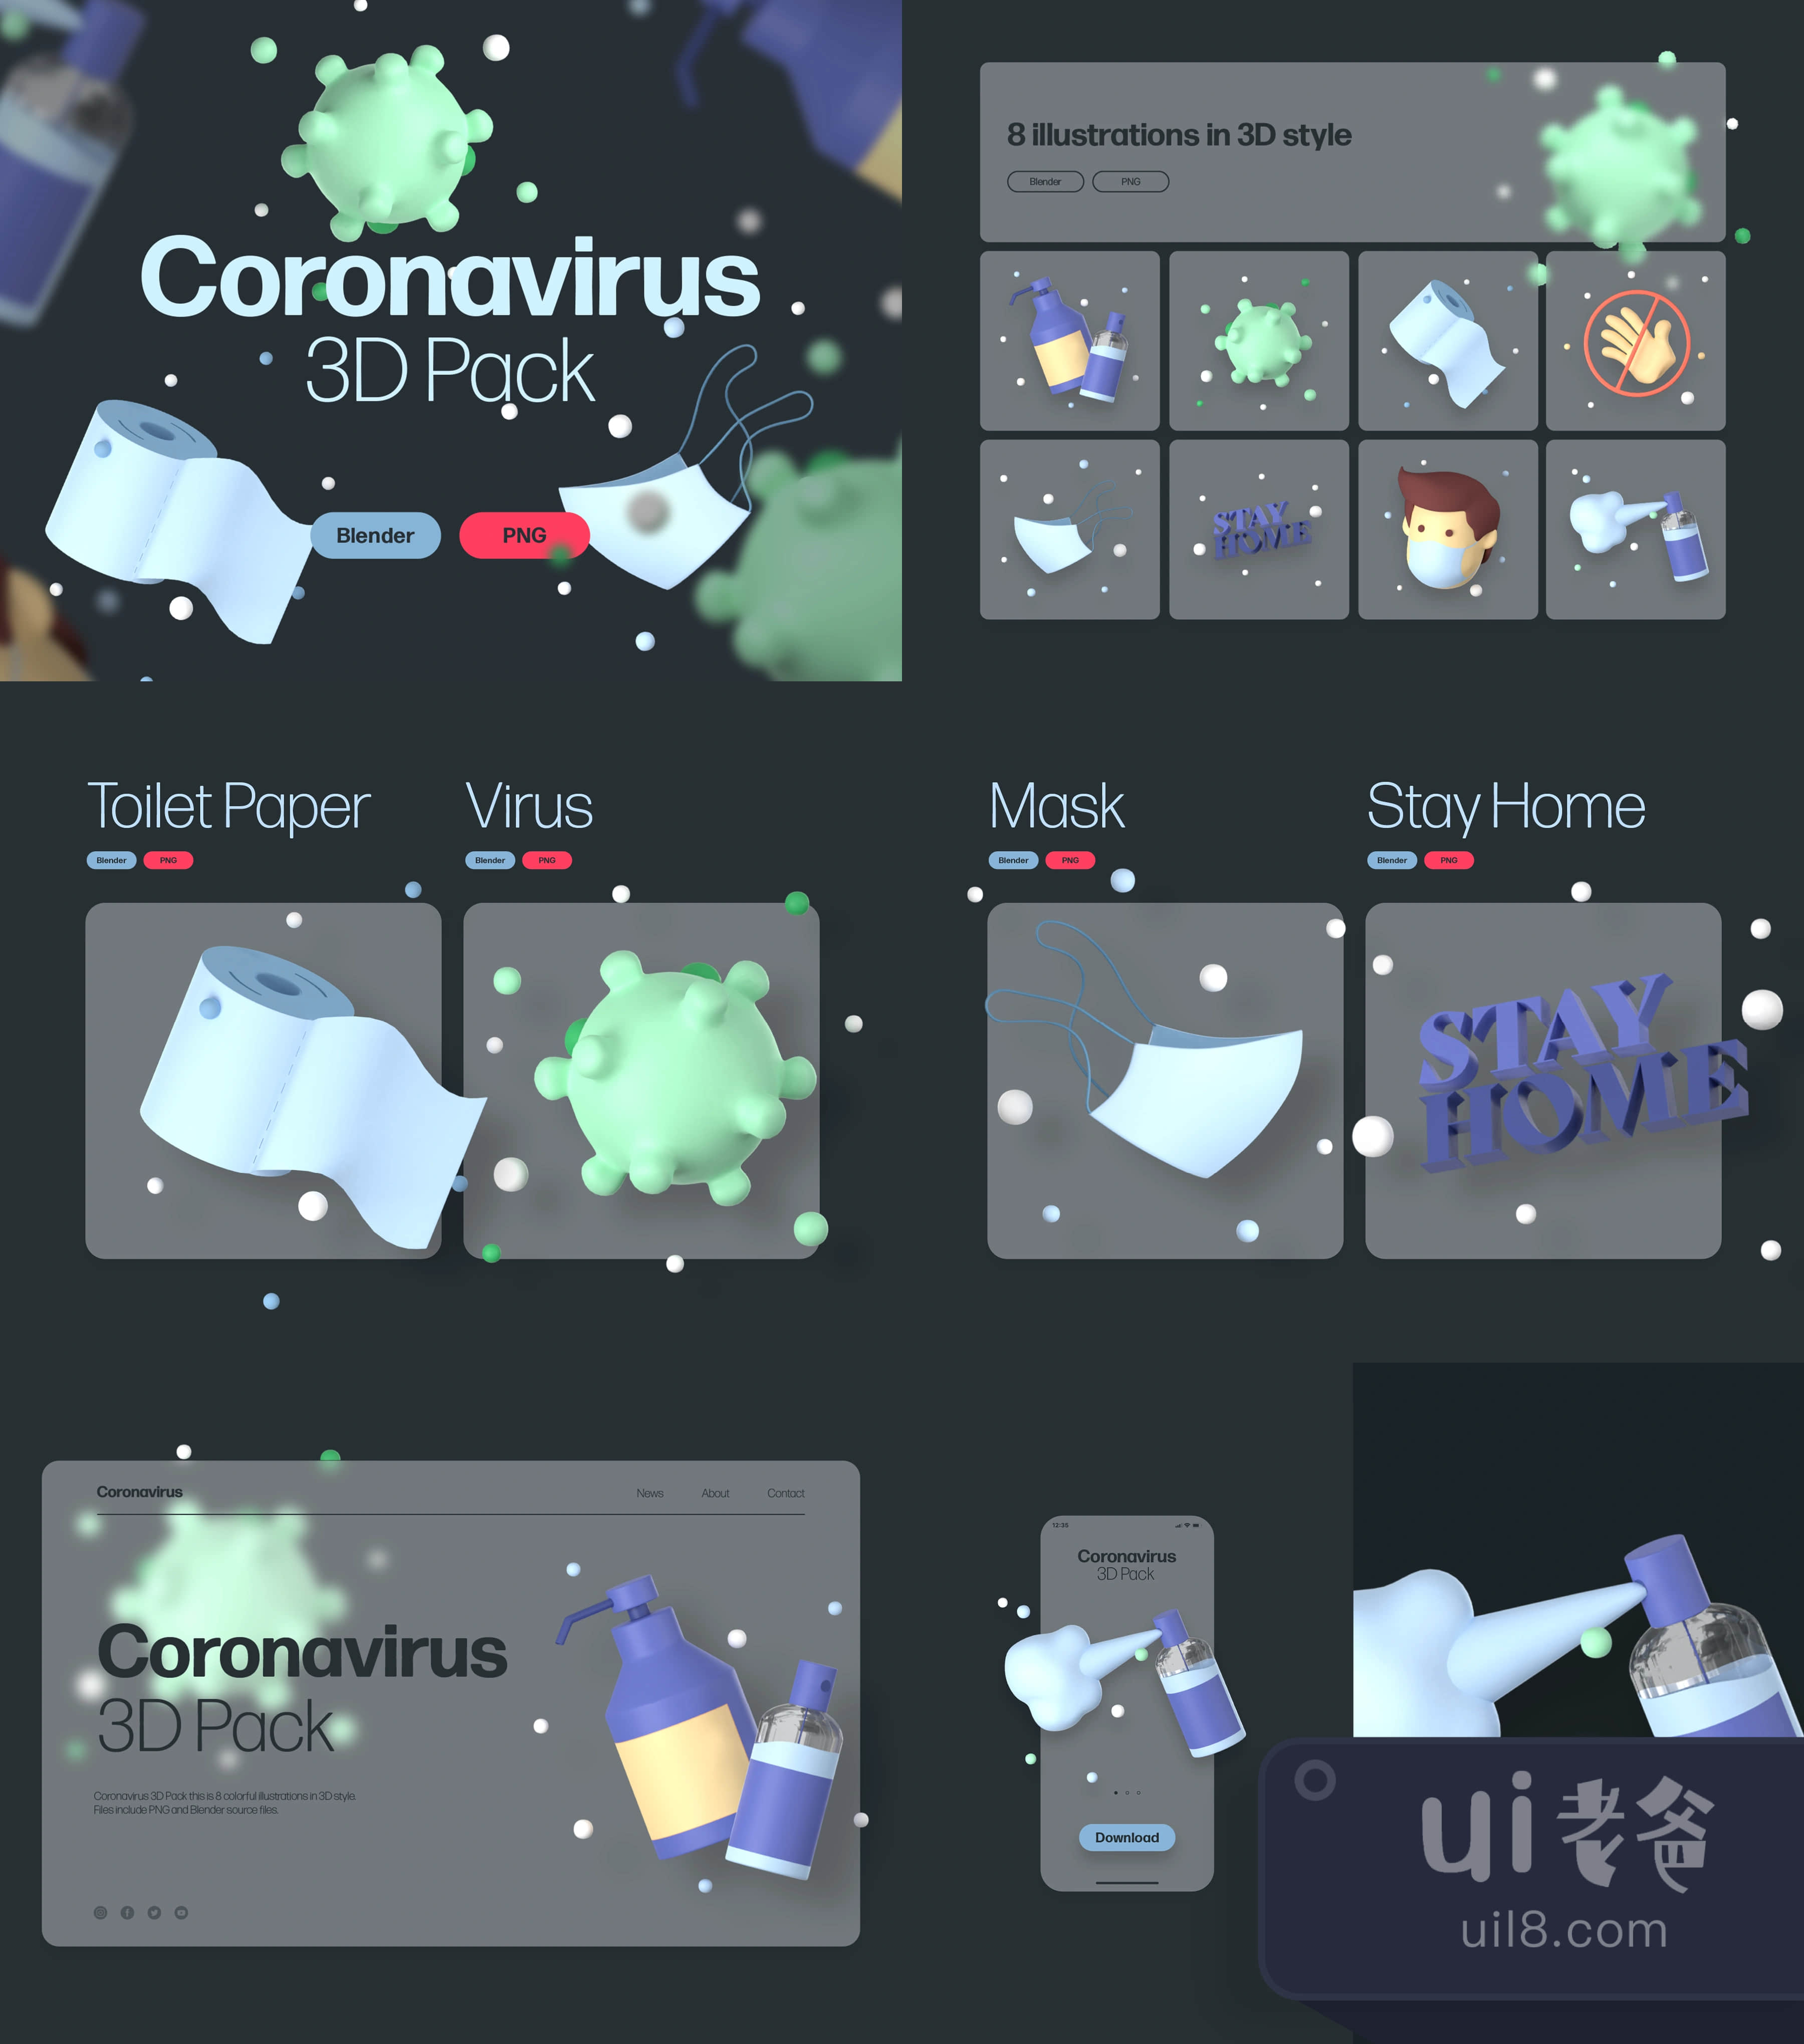 冠状病毒3D包 (Coronavirus 3D Pack)插图1